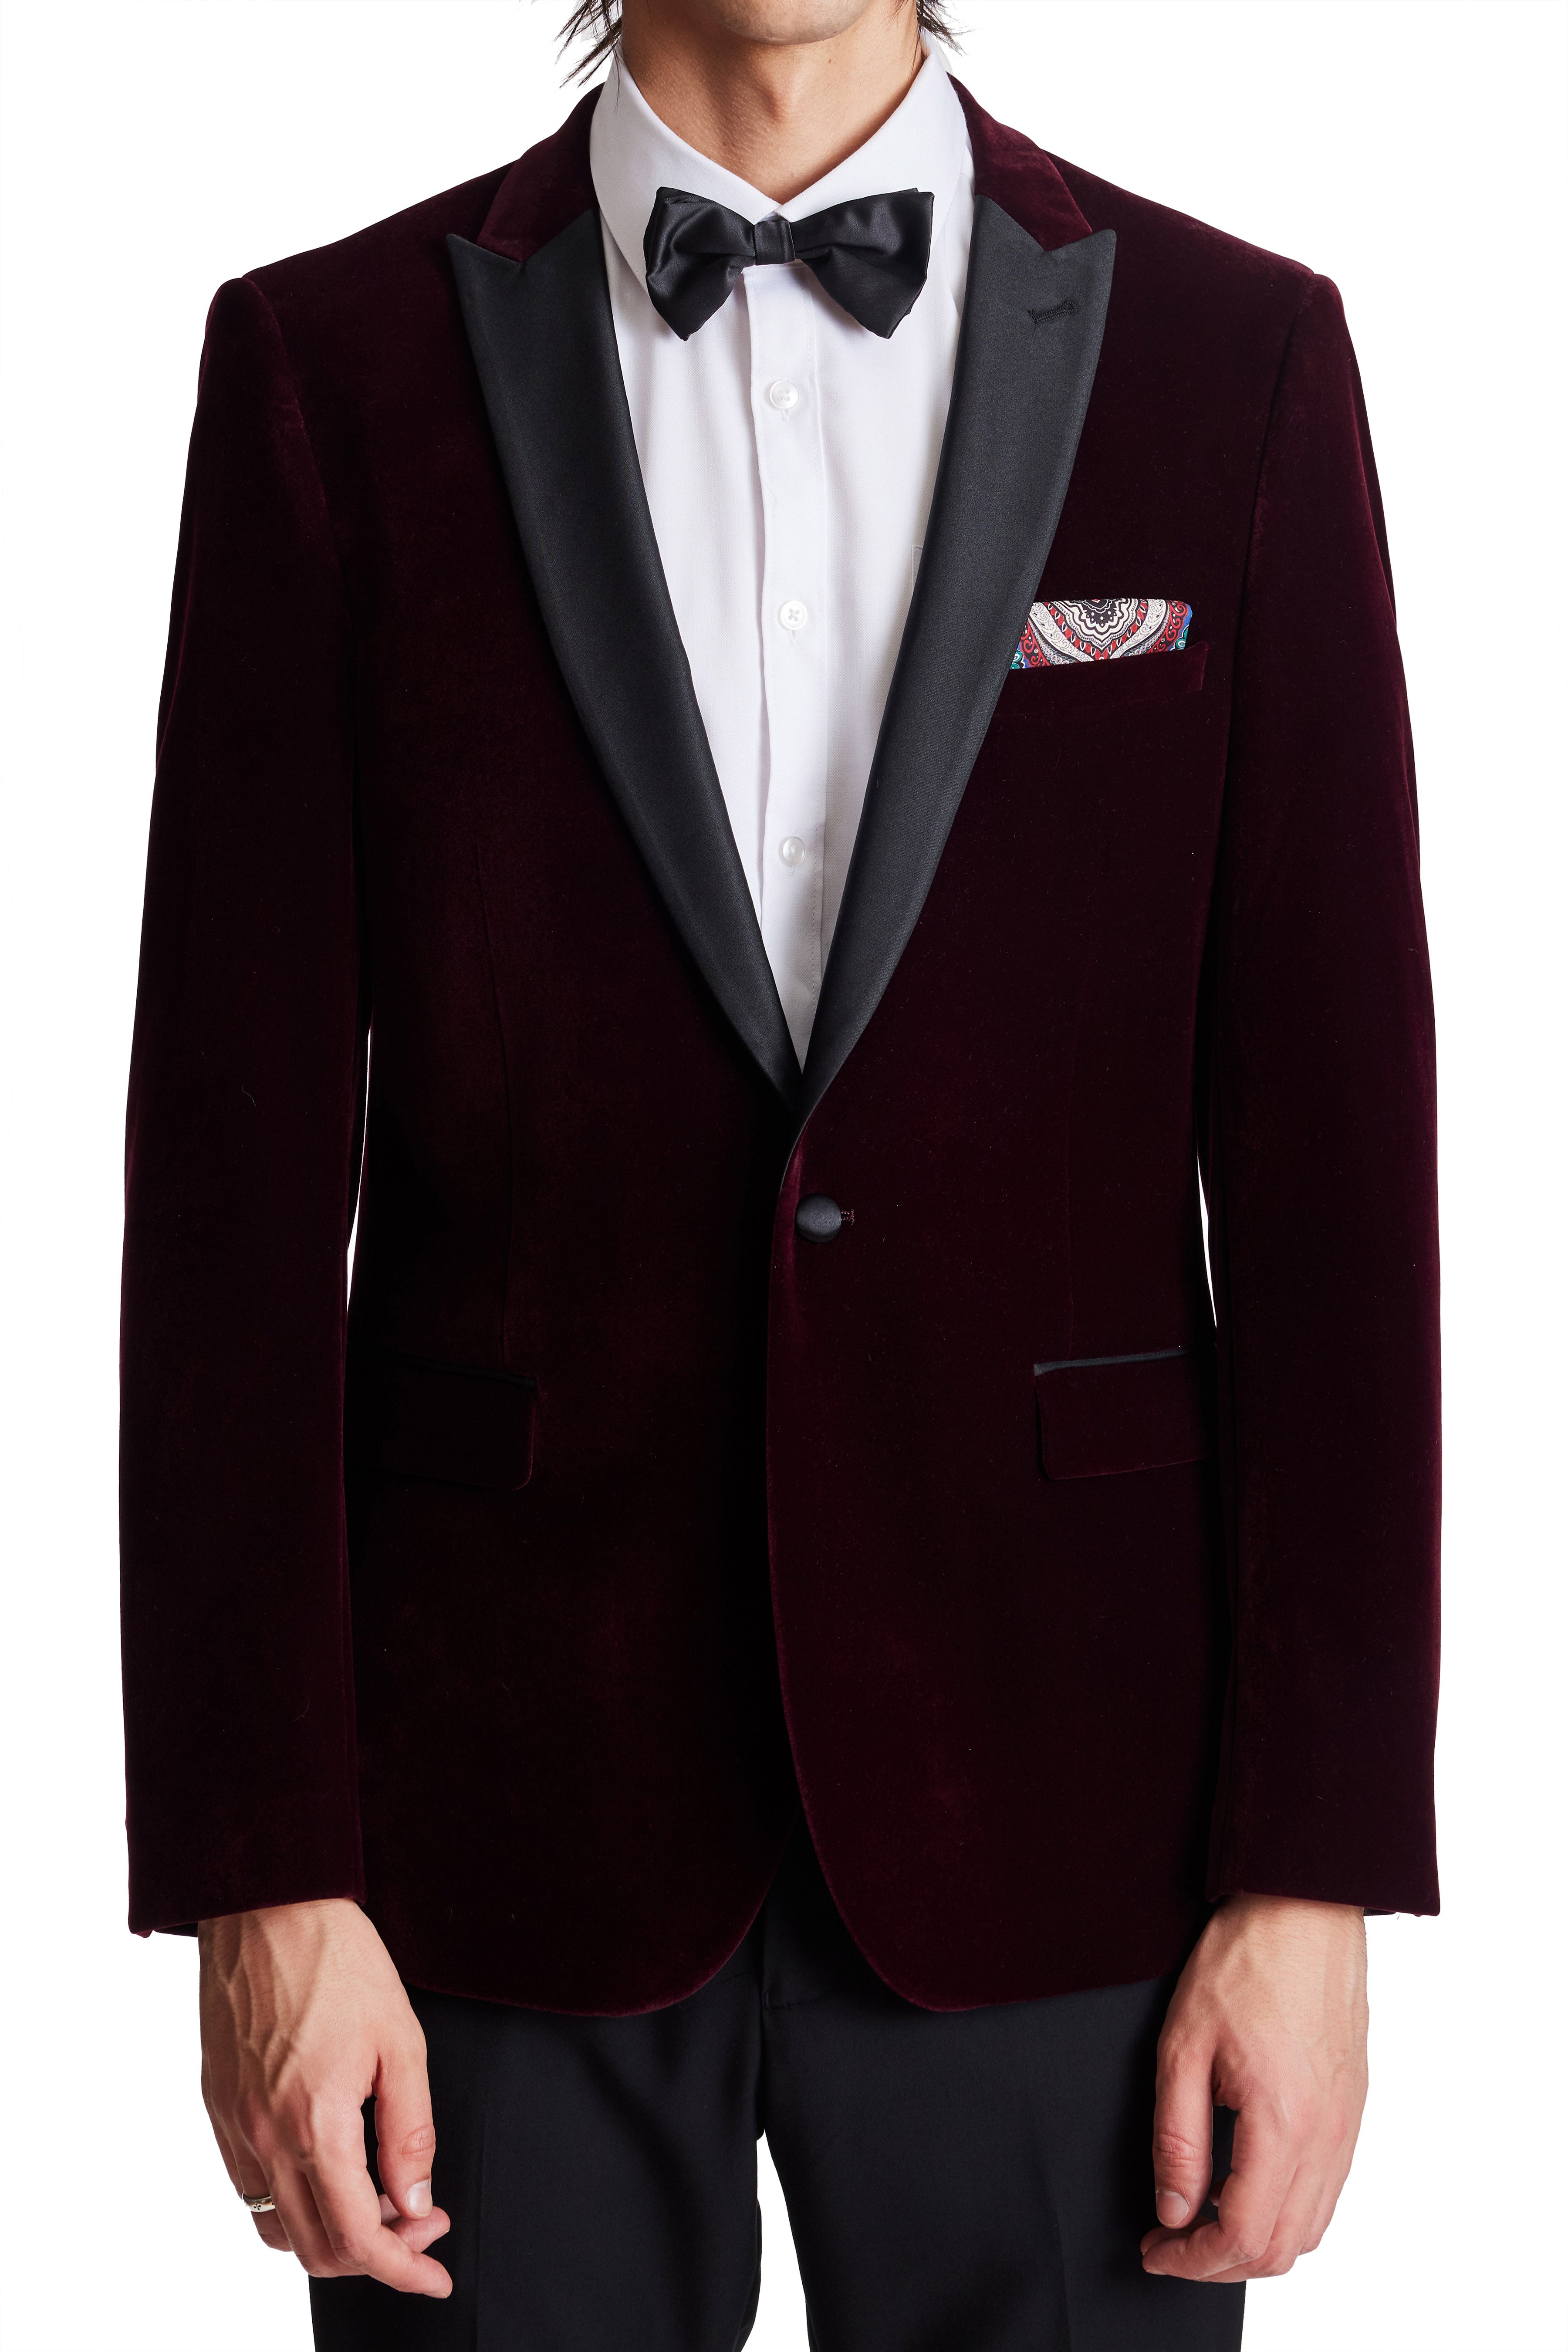 3 PC Regular Fit Burgundy Business Suit Notch Lapel One Button Jacket Pants  Vest Wedding Tuxedos Business Suits Burgundy 34 Chest / 28 Waist at Amazon  Men's Clothing store